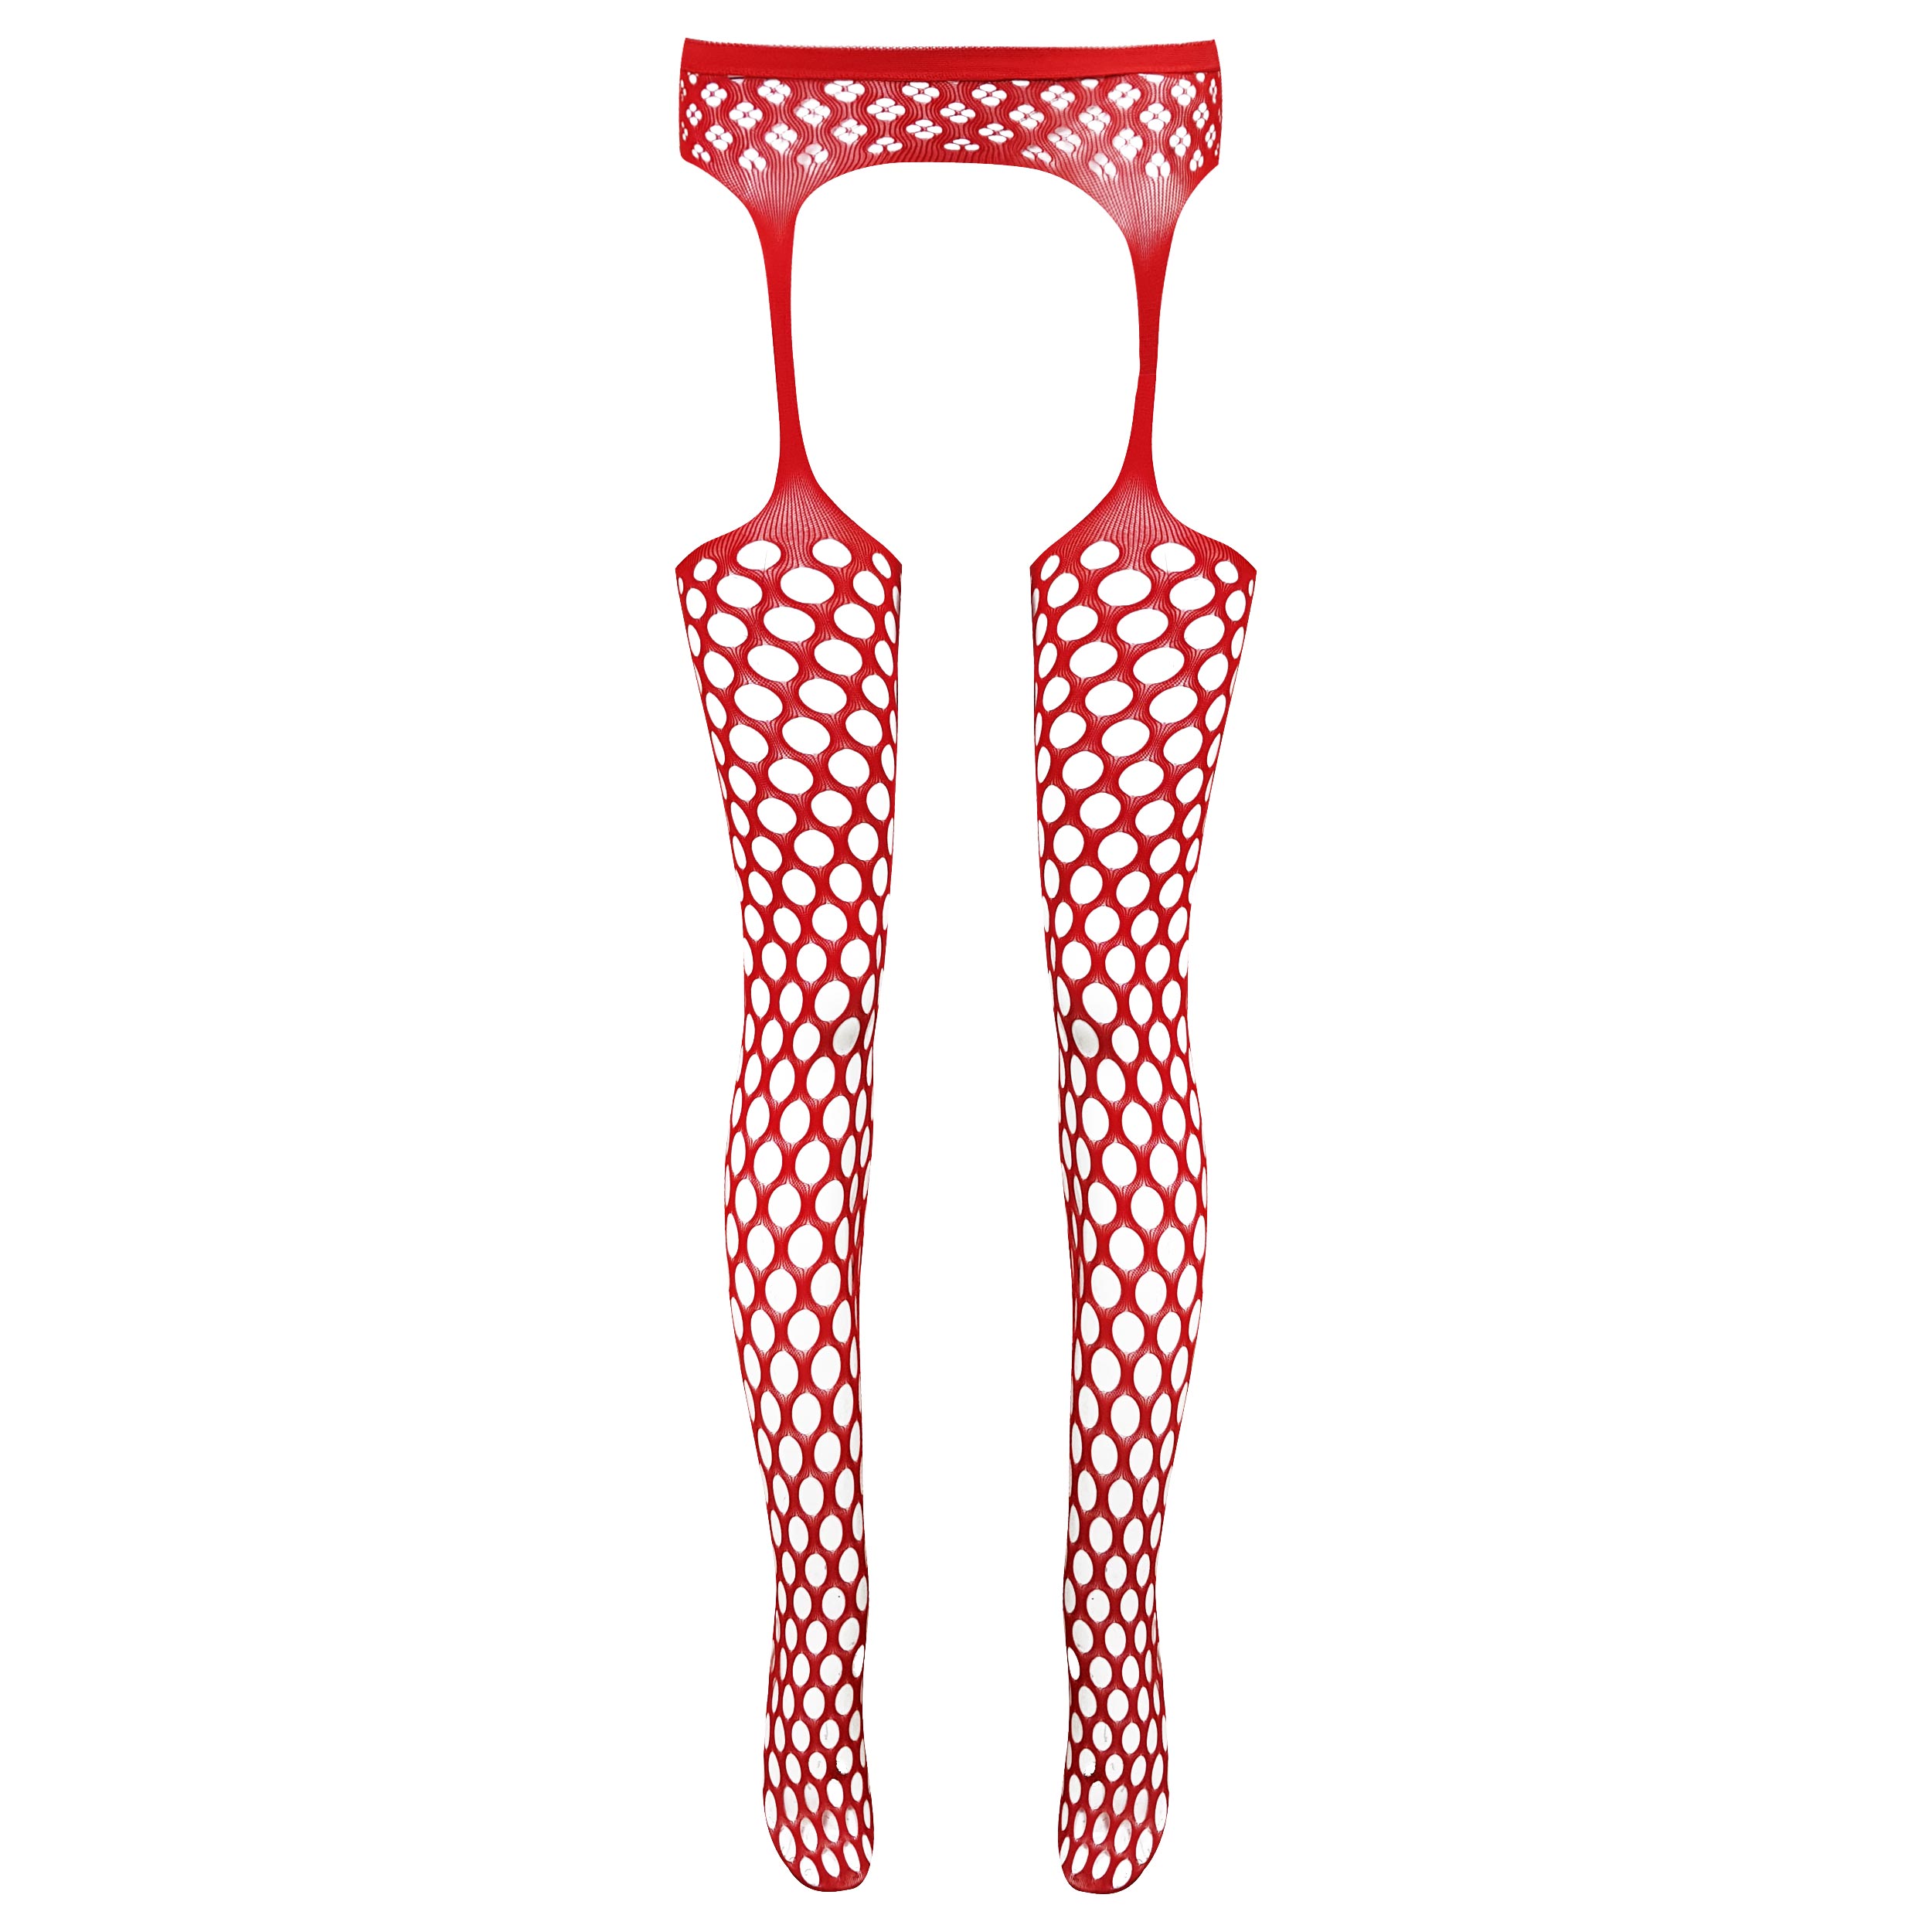 جوراب شلواری زنانه ماییلدا مدل فانتزی کد 3684-KW108 رنگ قرمز